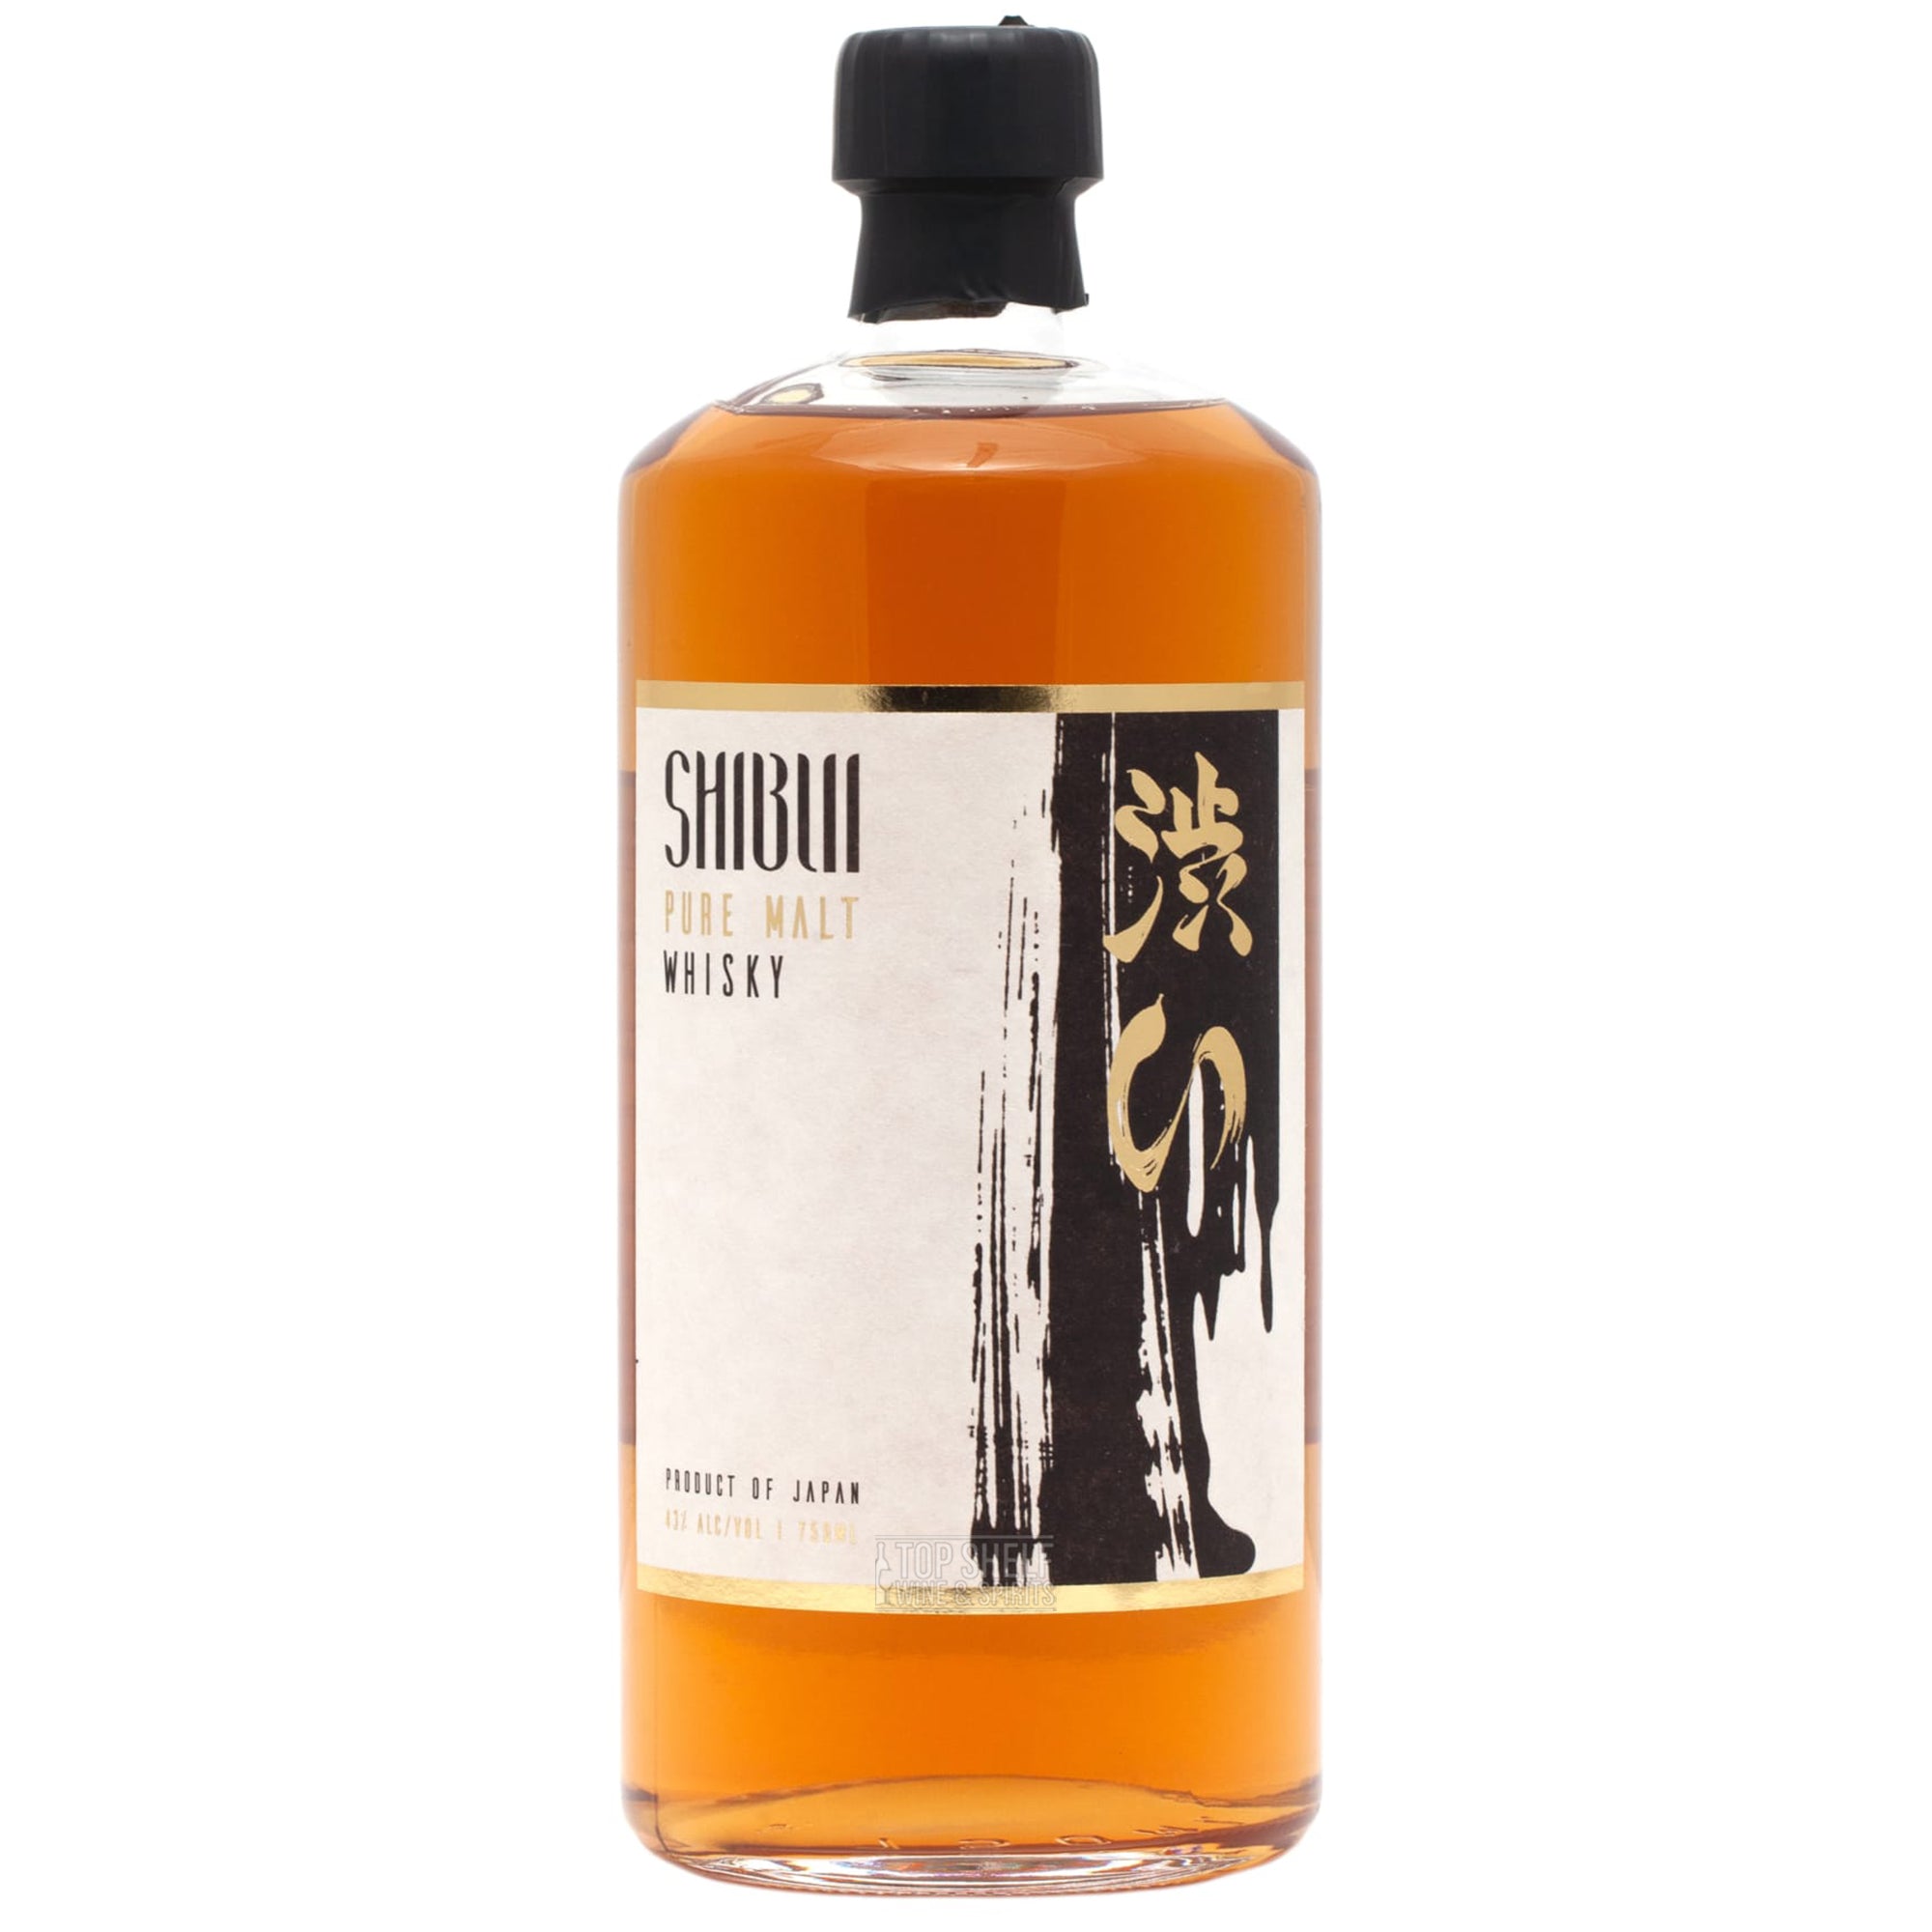 shibui pure malt whisky japan